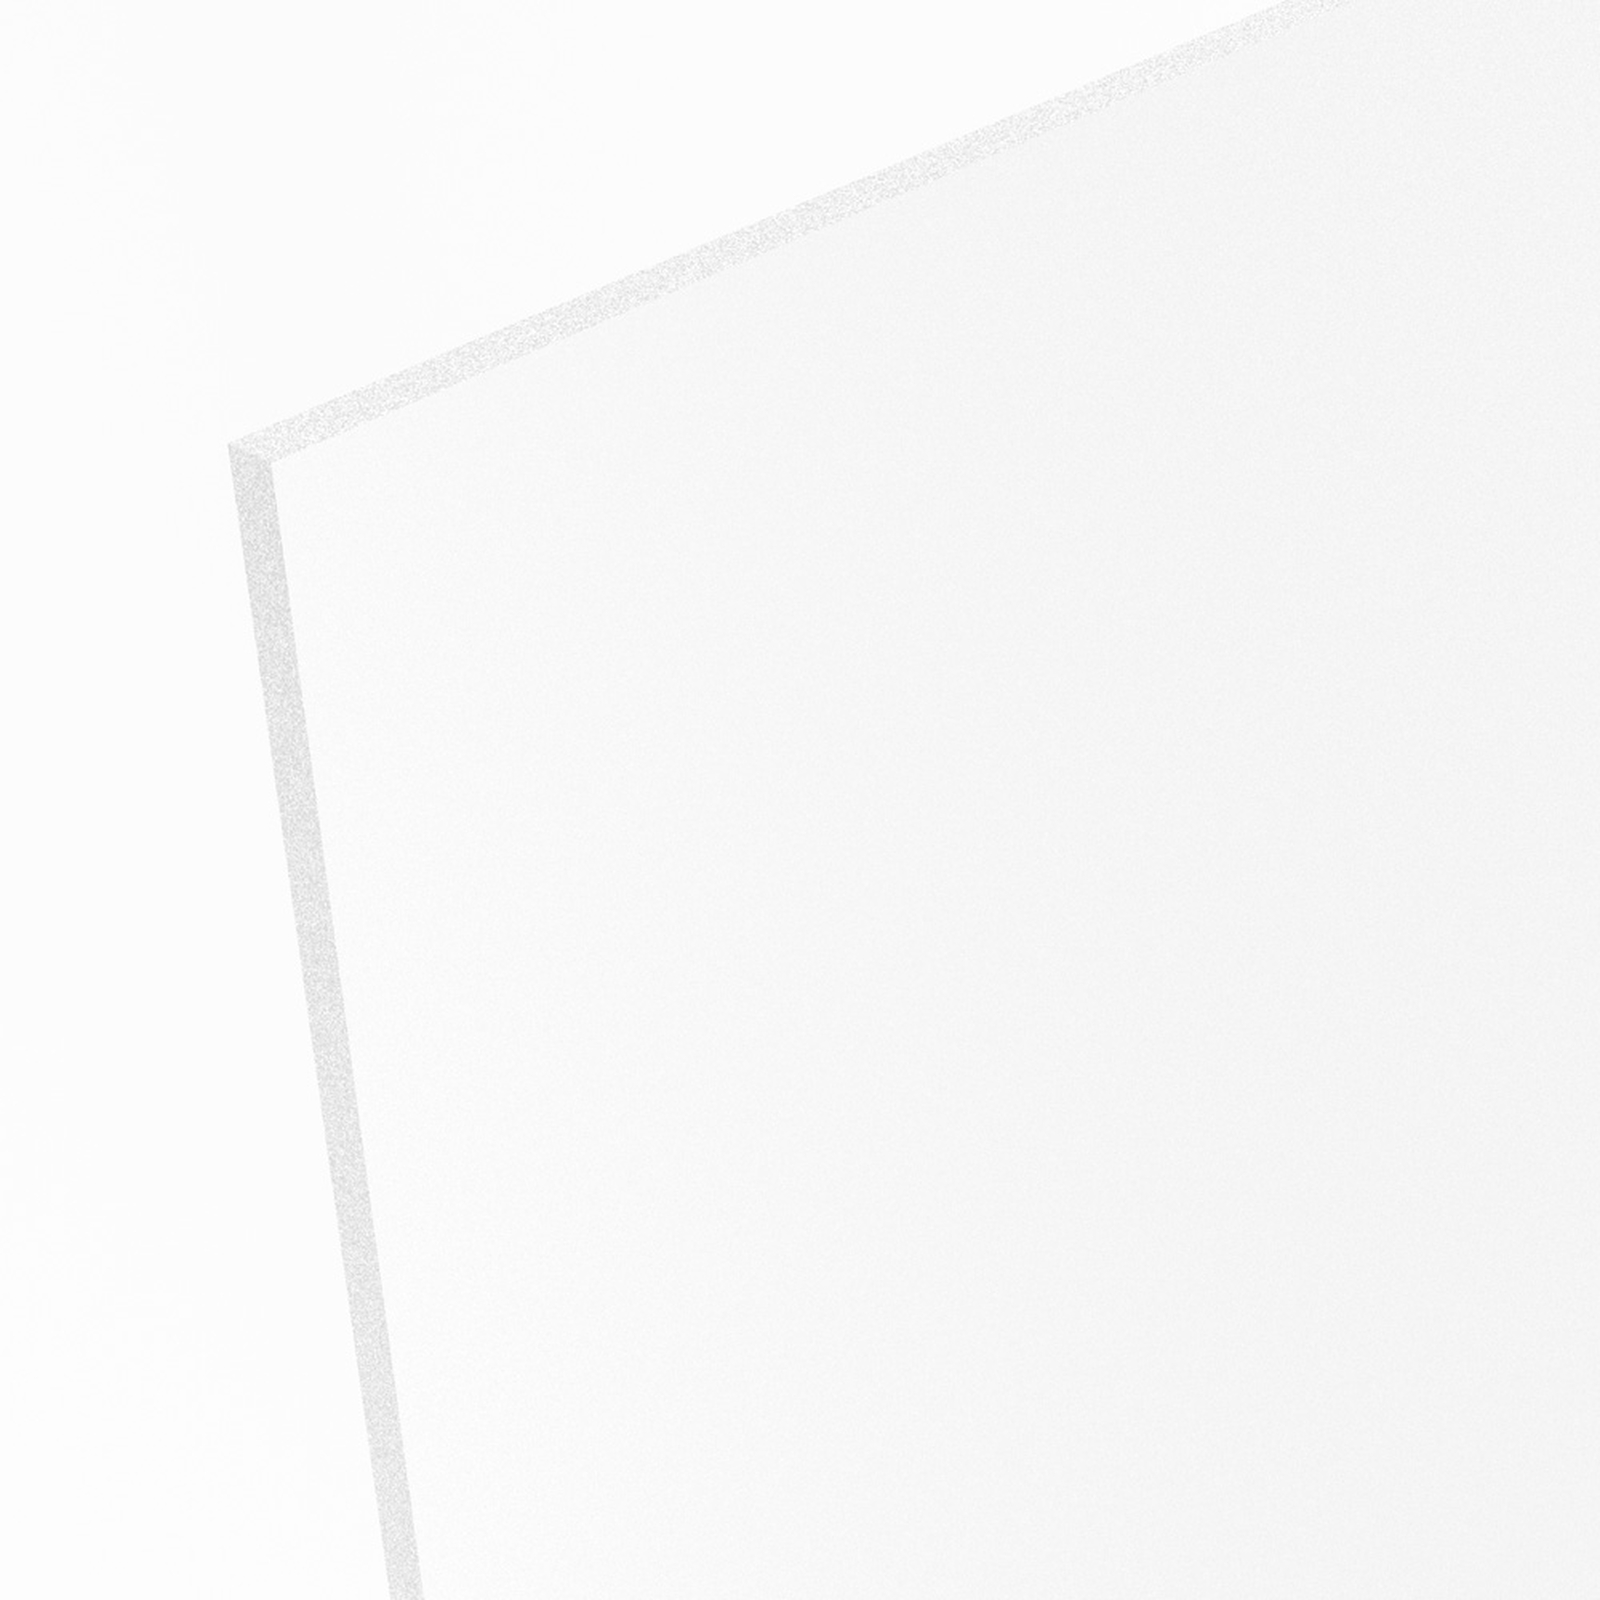 Hartschaum PVC Platte Zuschnitt weiß 1000 x 500 x 5 mm 